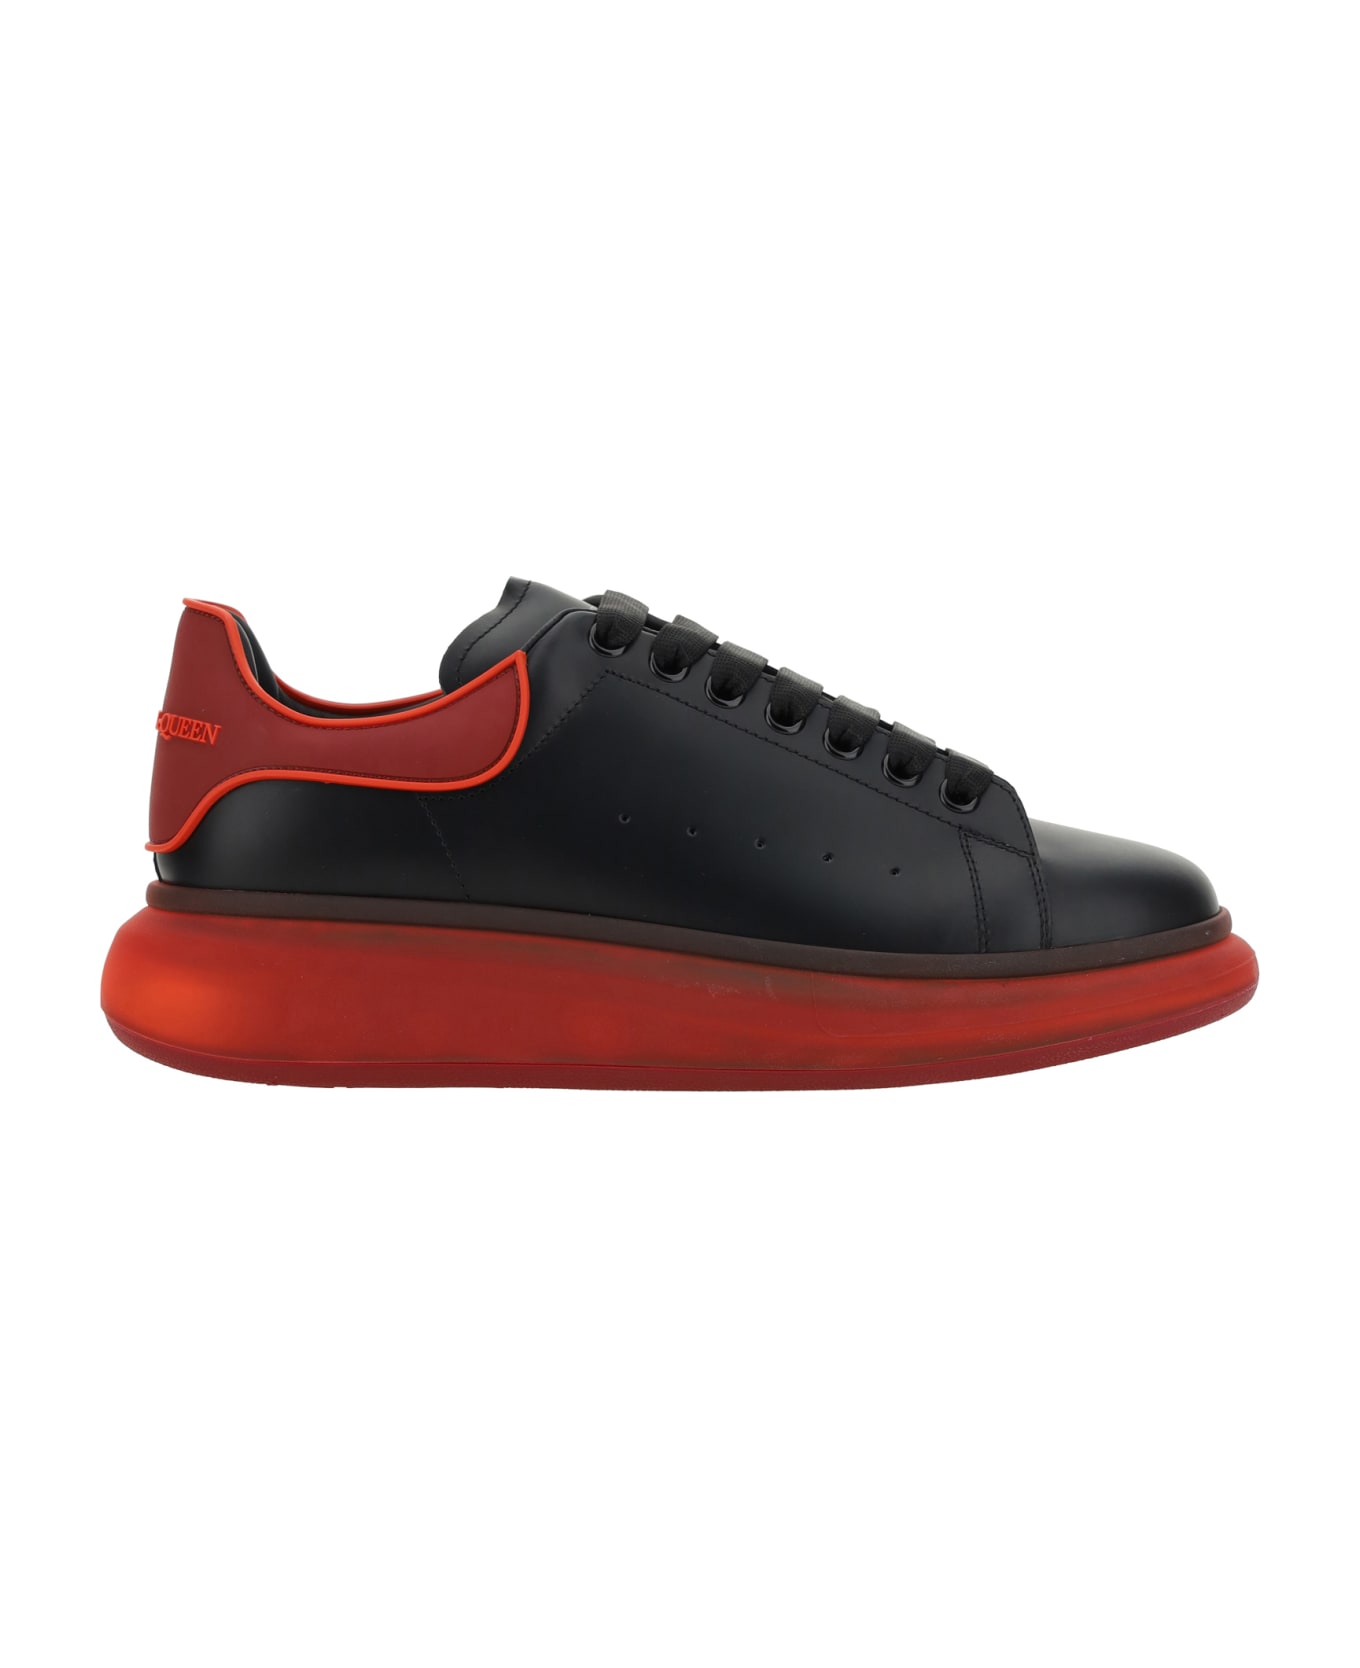 Alexander McQueen Sneakers - Black/multired